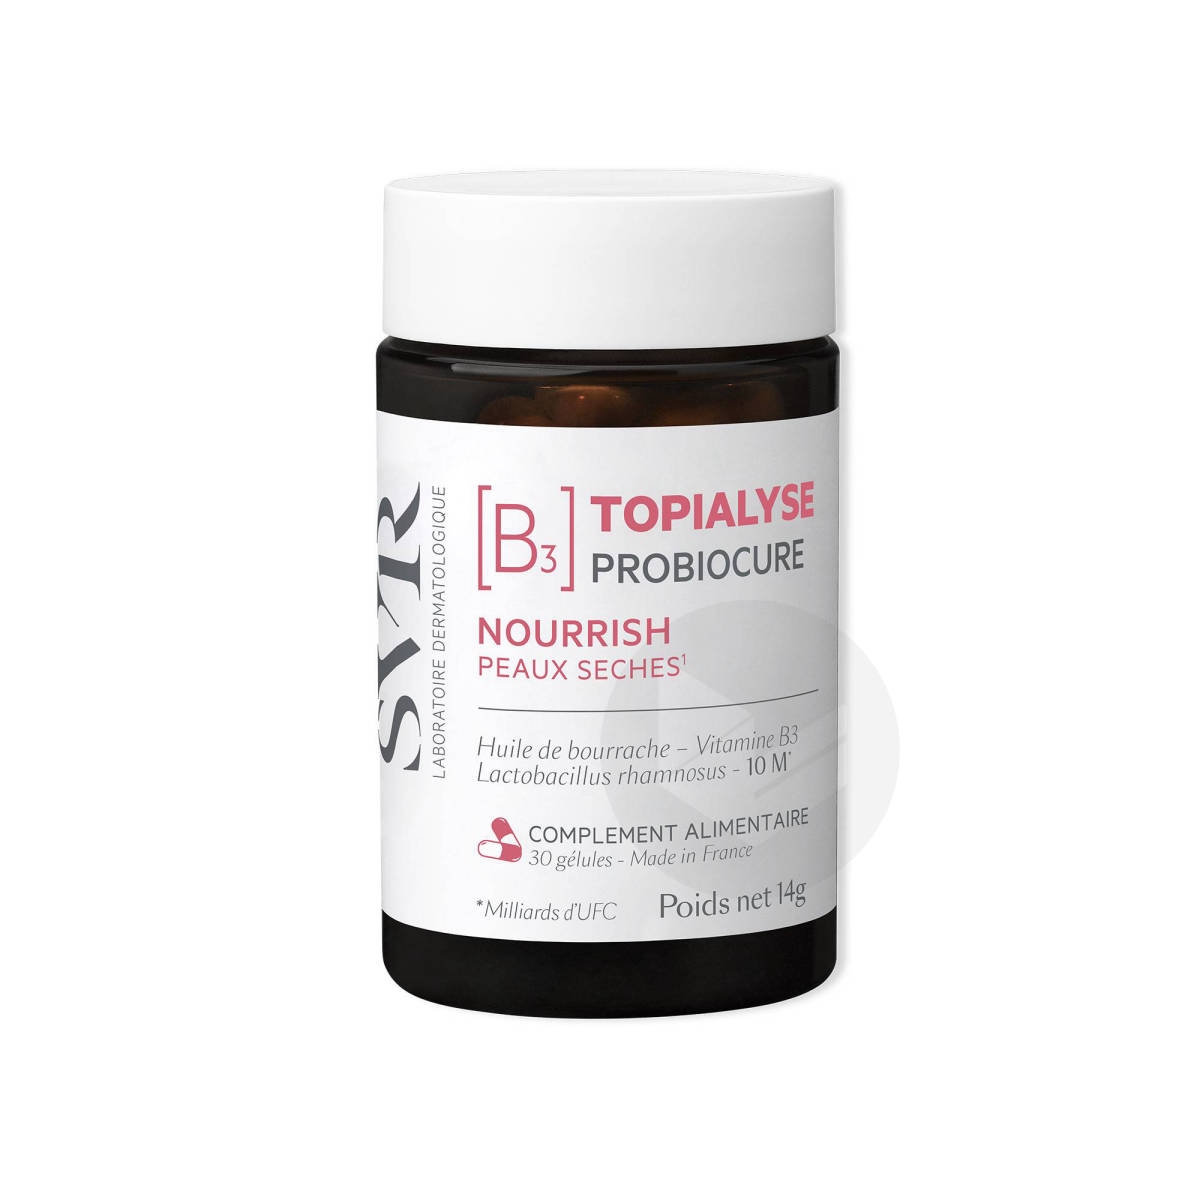 TOPIALYSE Probiocure 30 gélules